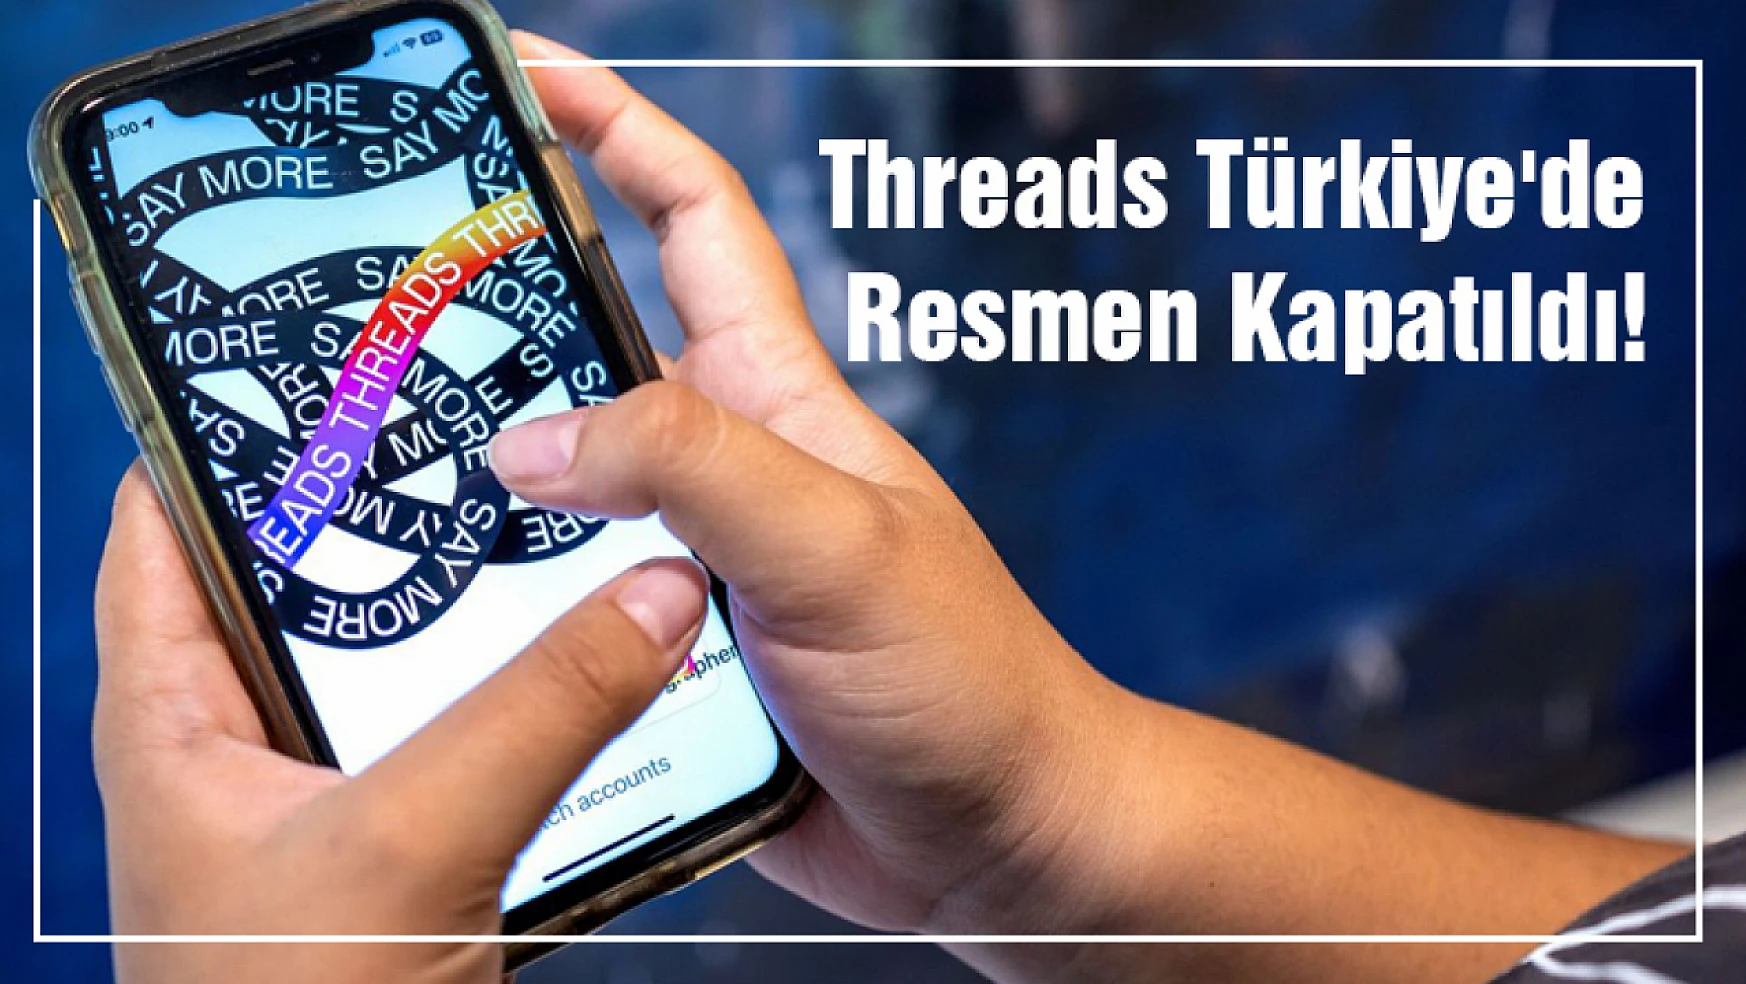 Threads Türkiye'de Resmen Kapatıldı!